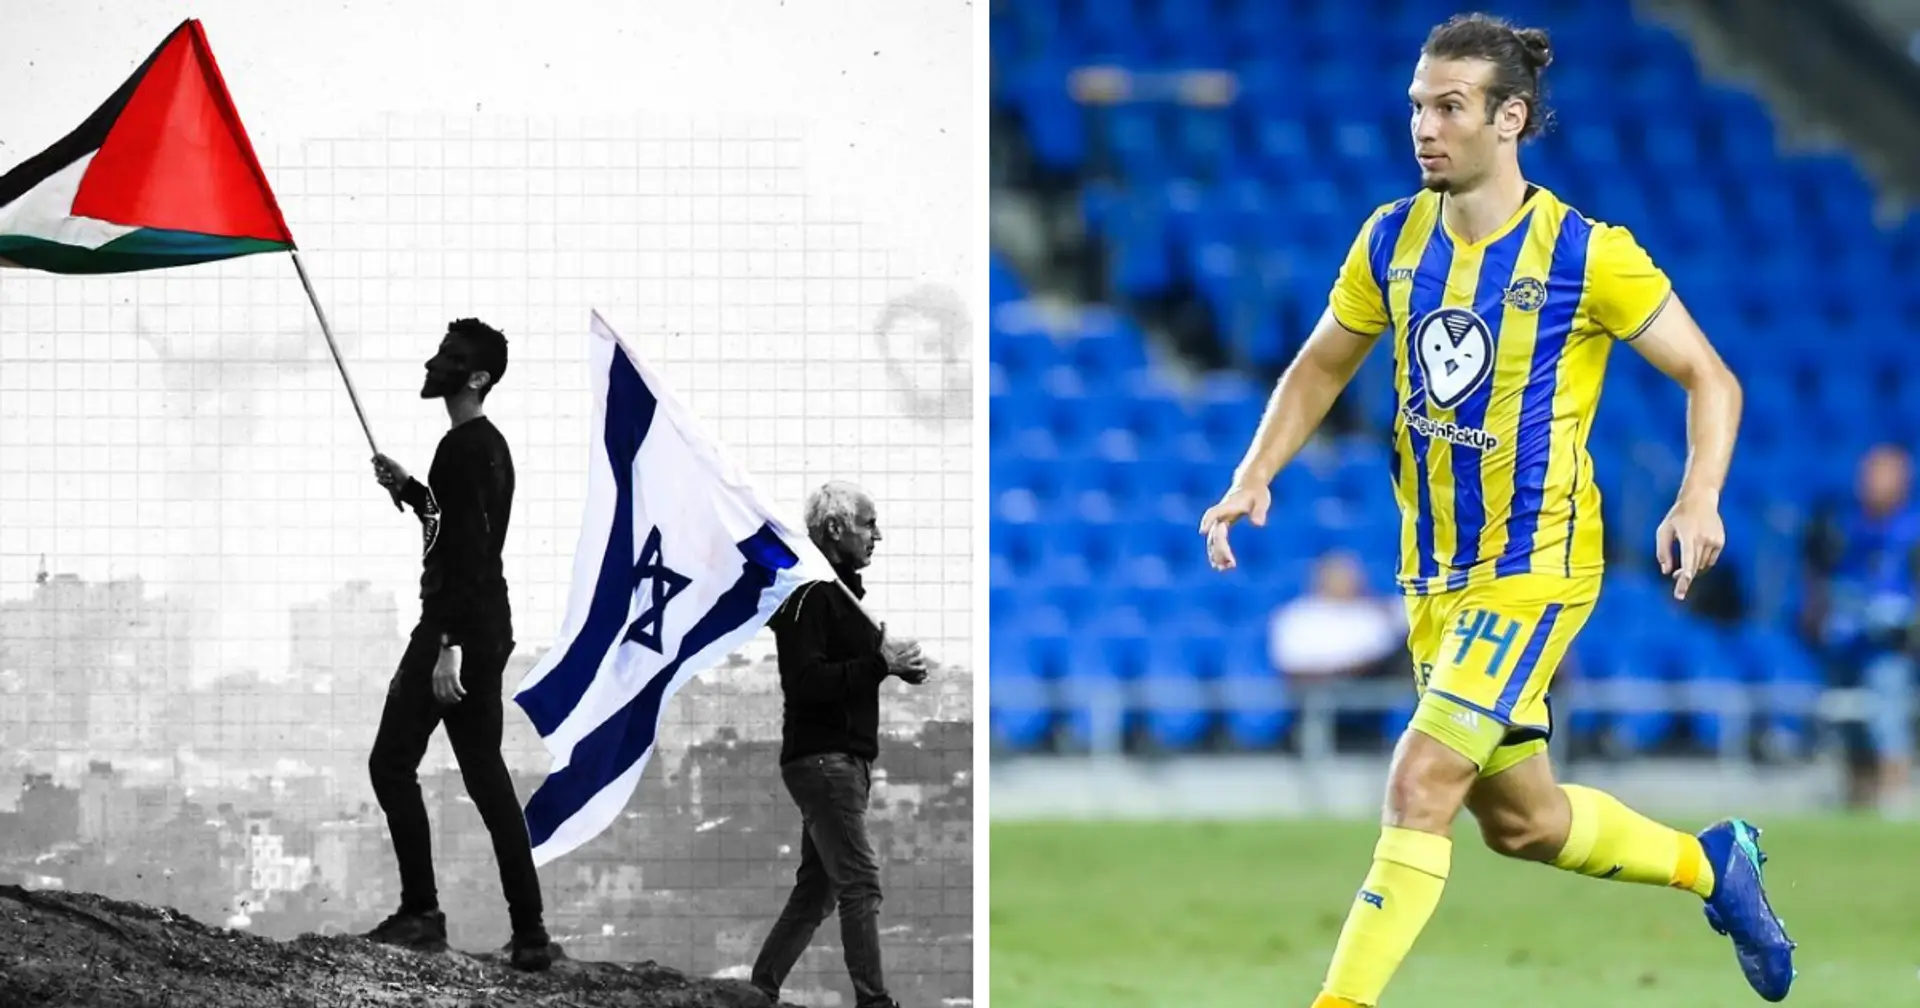 Le défenseur du Maccabi Goldberg a déclaré qu'il n'y avait aucune tension entre les joueurs juifs et musulmans : "Nous sommes des êtres humains et nous pouvons vivre en paix"